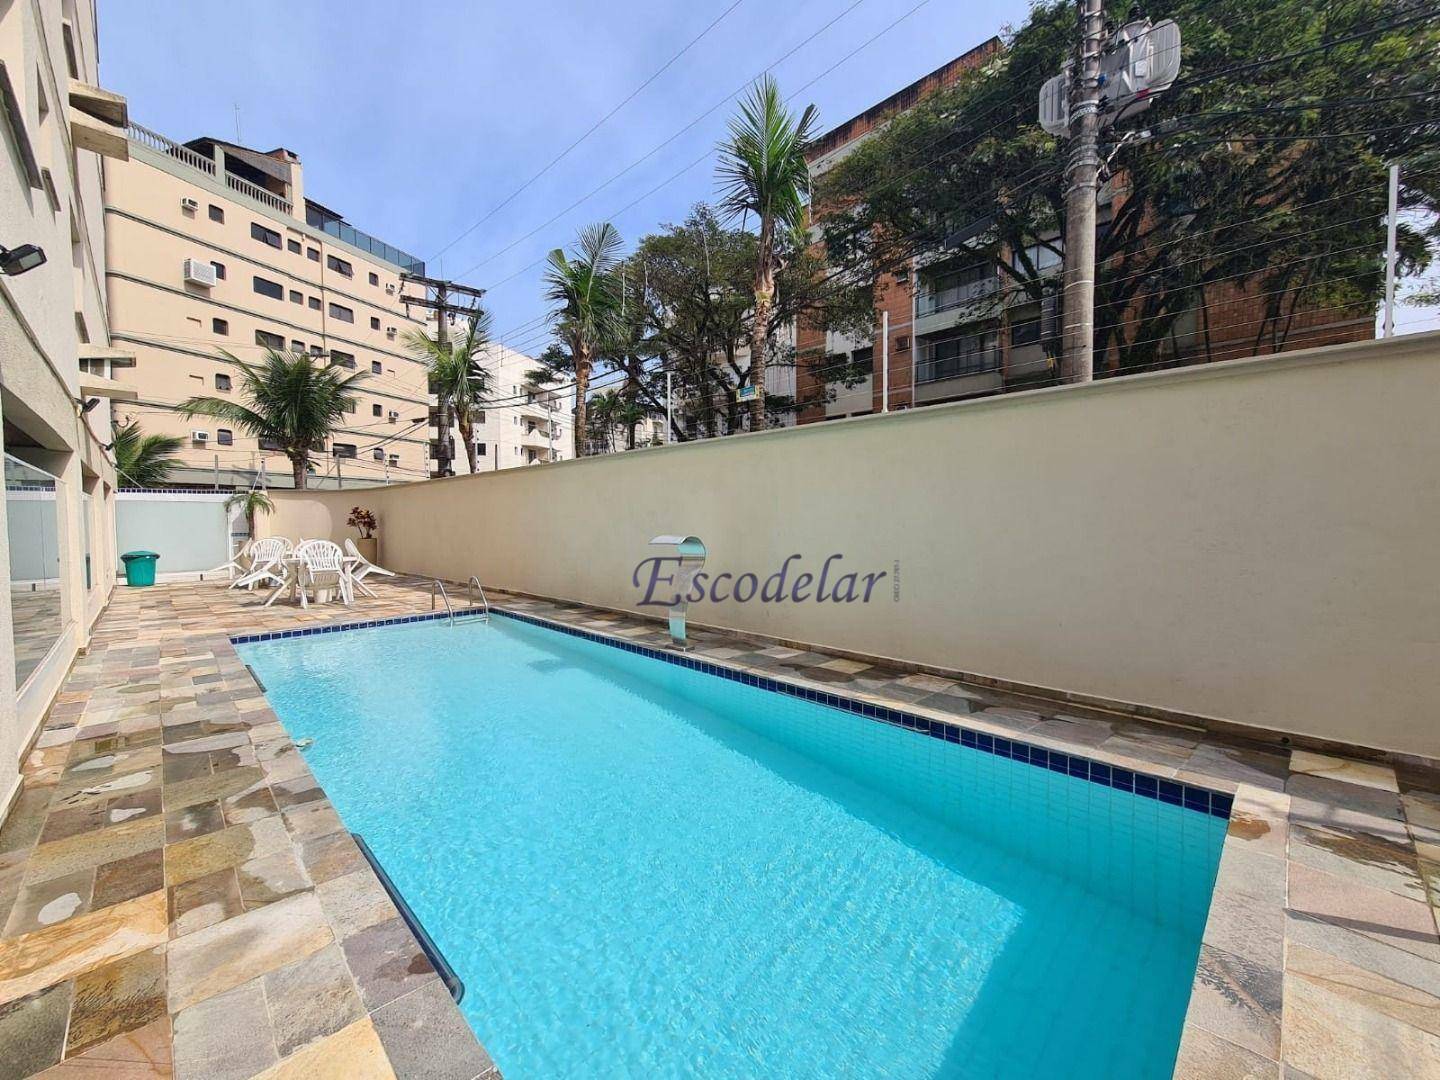 Apartamento com 3 dormitórios à venda, 90 m² por R$ 480.000,00 - Parque Enseada - Guarujá/SP